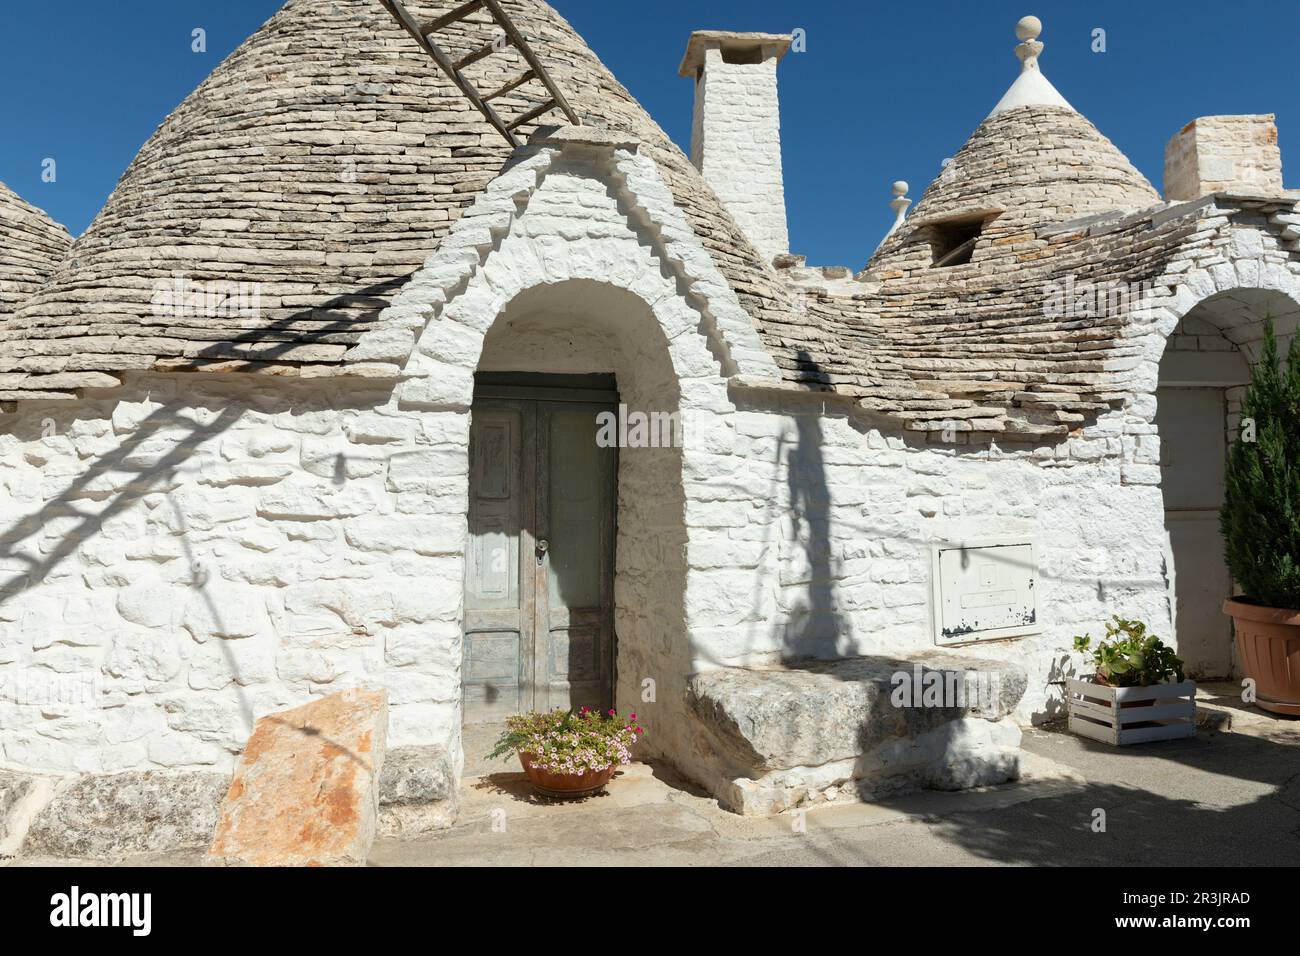 Typical trulli houses in Alberobello, Apulia, Italy Stock Photo